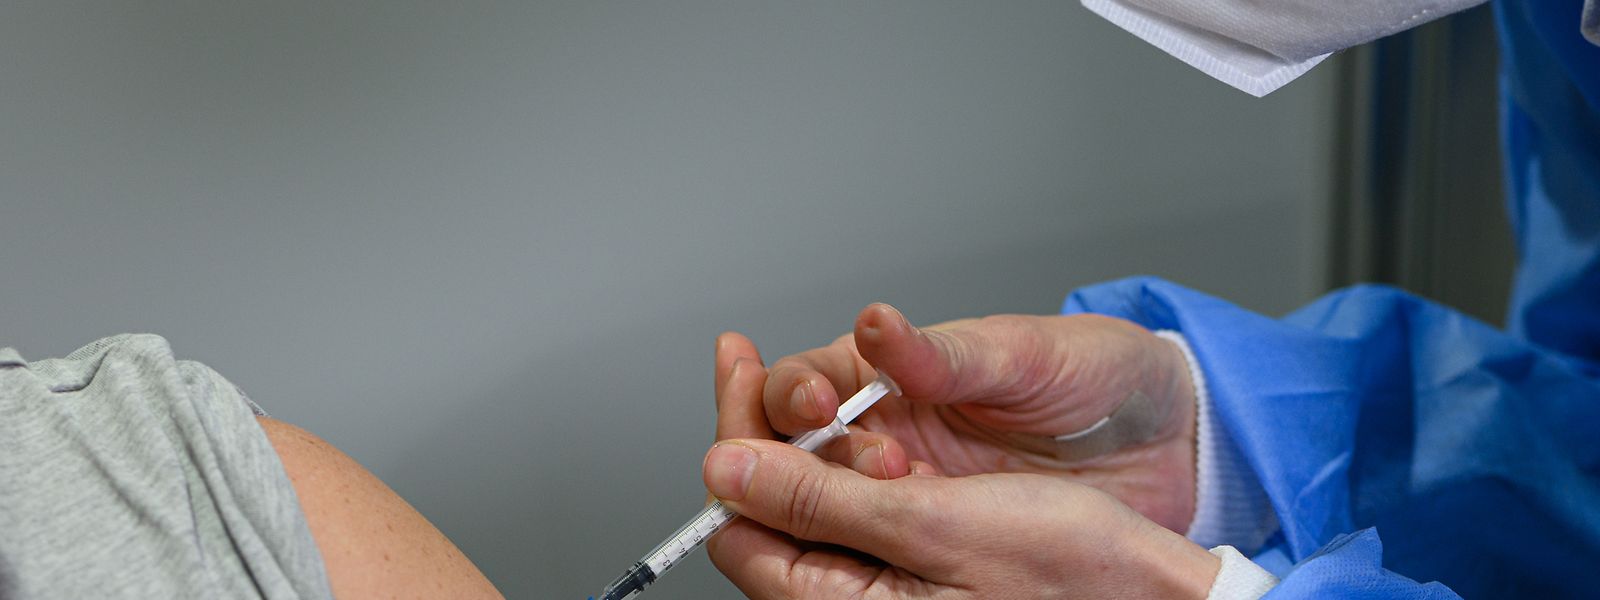 Le Bundestag allemand se prononce ce jeudi sur une éventuelle vaccination obligatoire - au Luxembourg, les préparatifs se poursuivent.